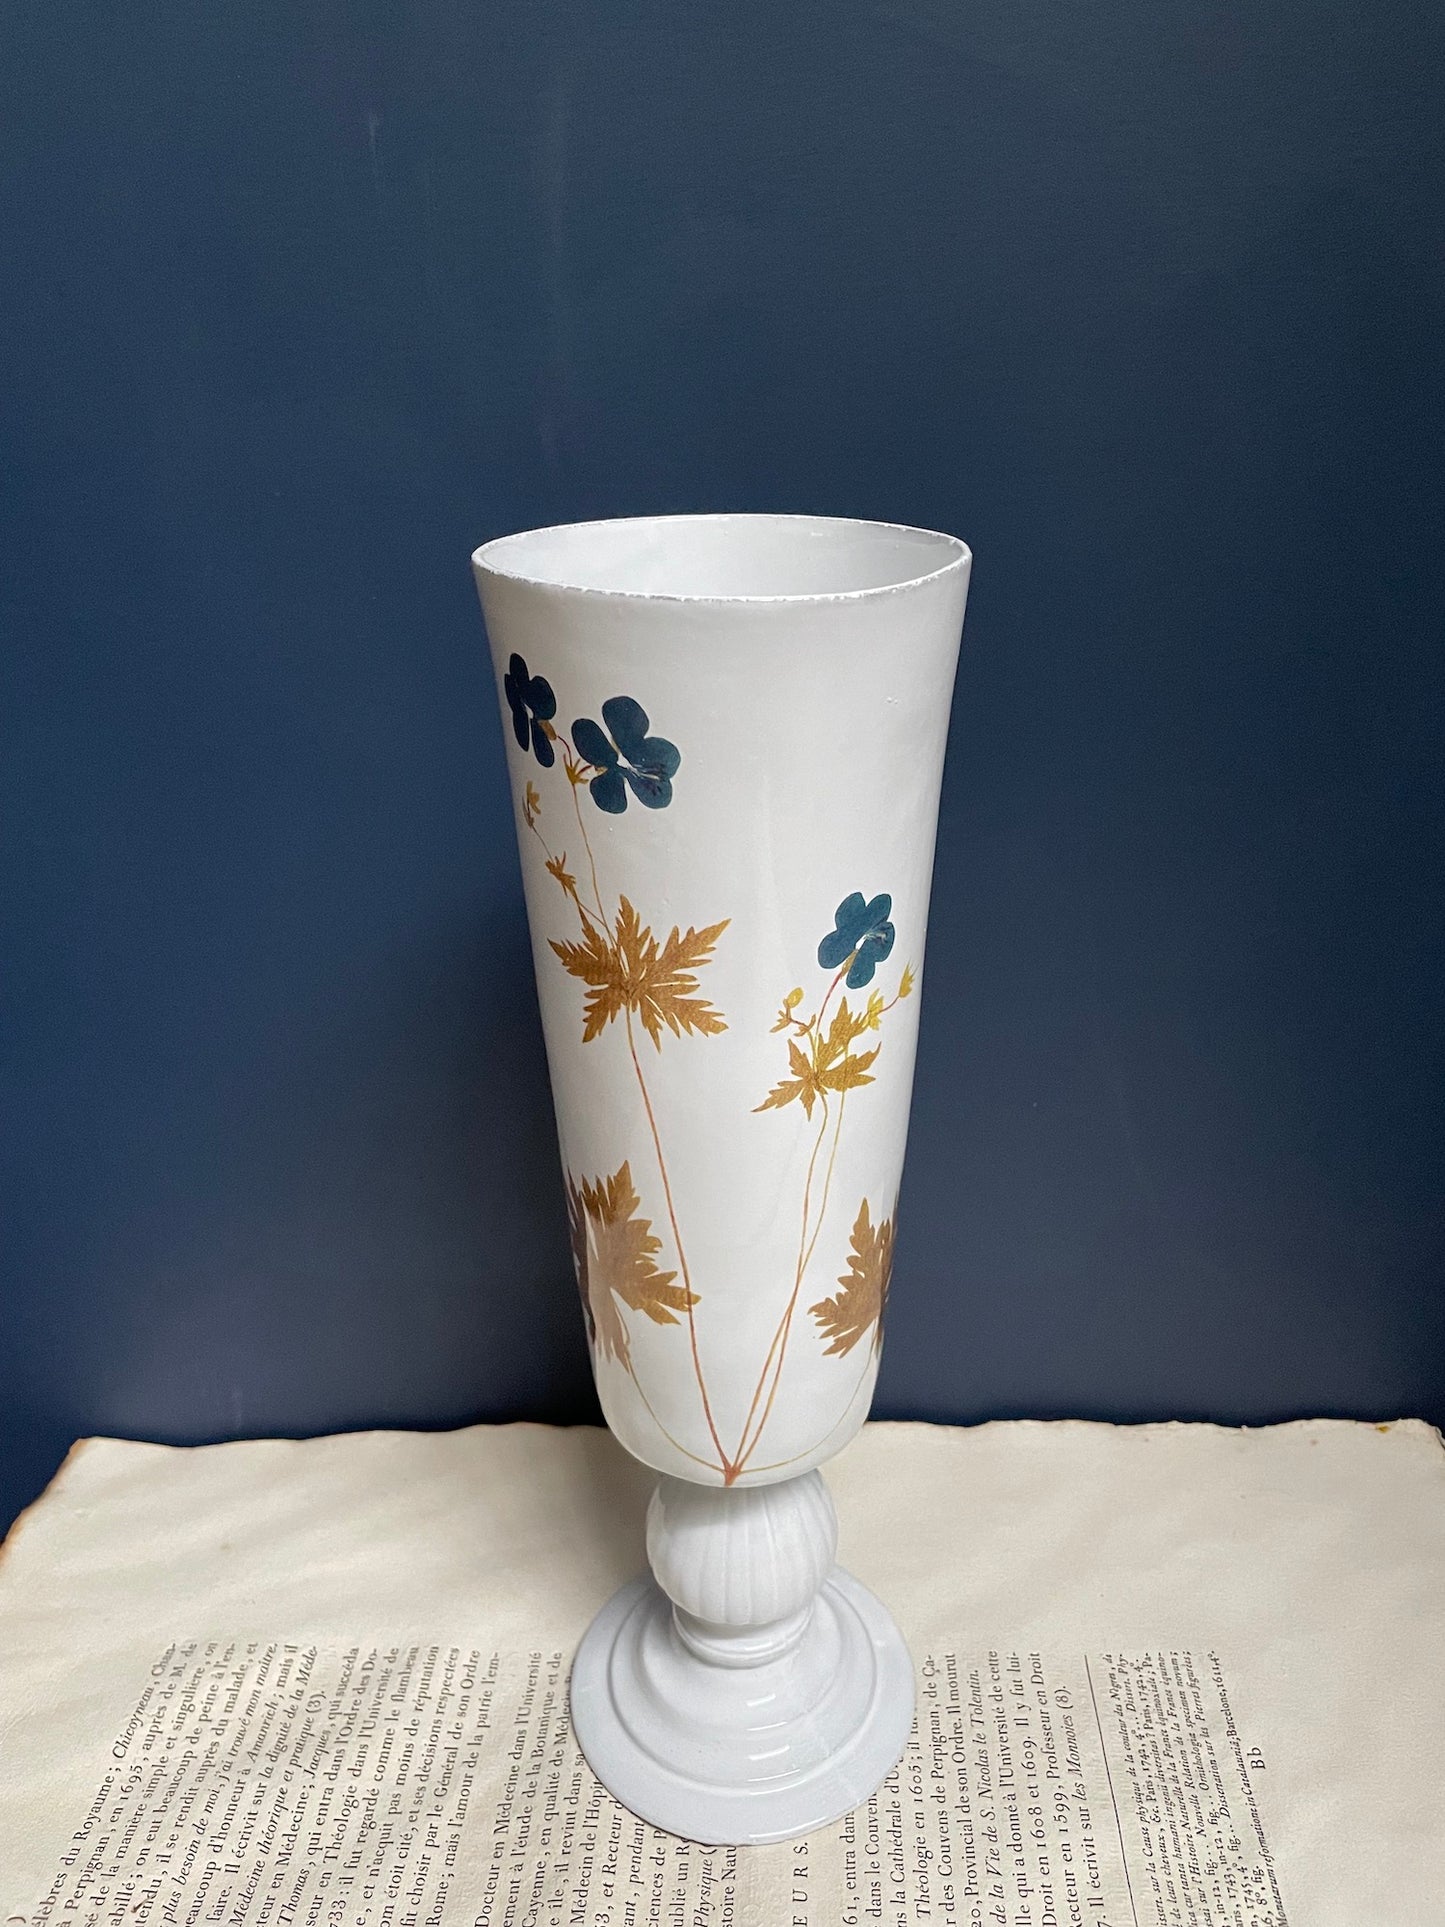 Astier de Villatte John Derian Bleu Geranium Vase